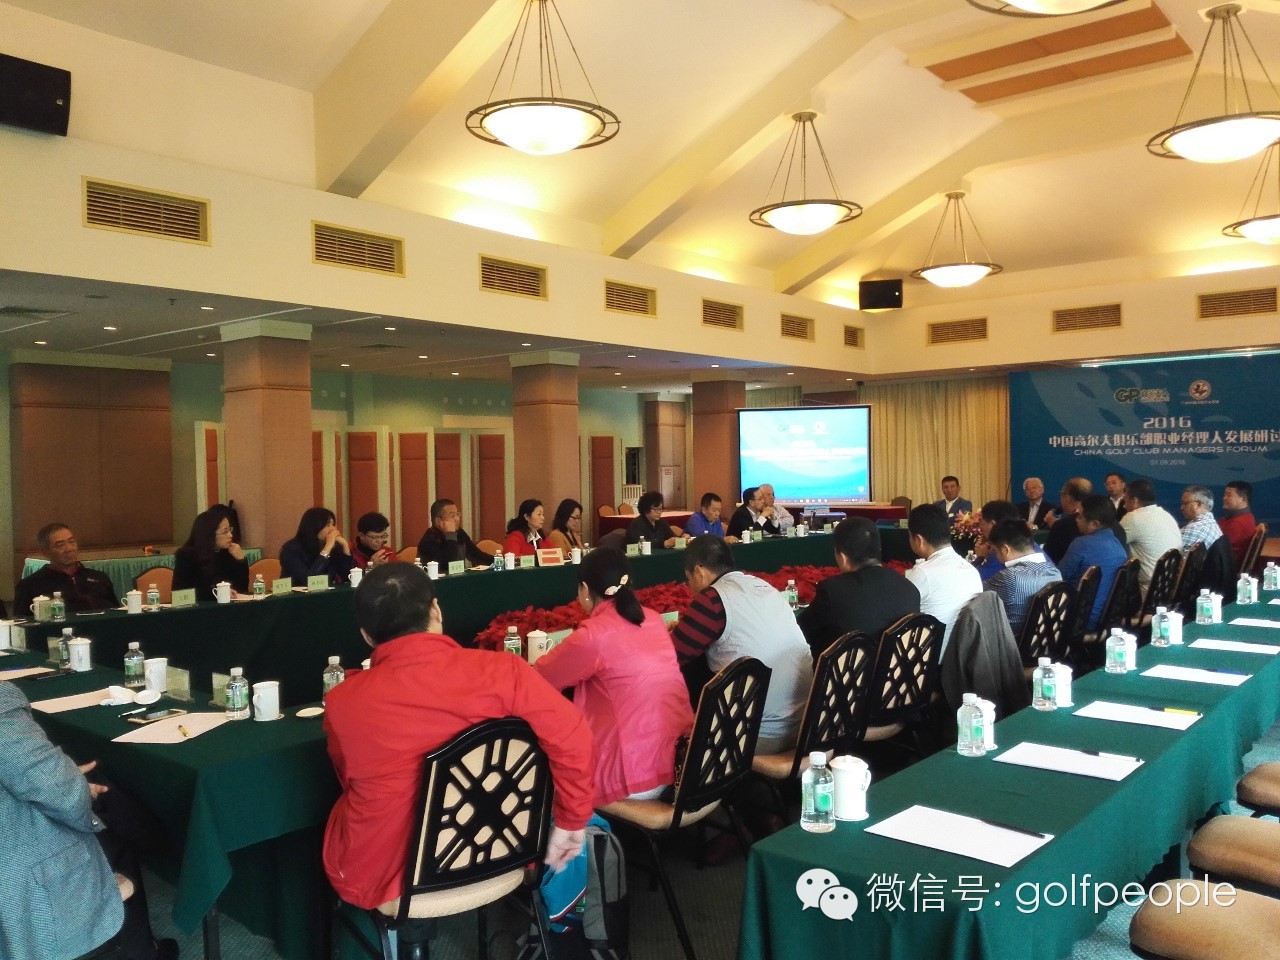 GP头条《GP 高尔夫人》召开“中国高尔夫俱乐部职业经理人发展研讨会” 共商职业经理人发展之前景